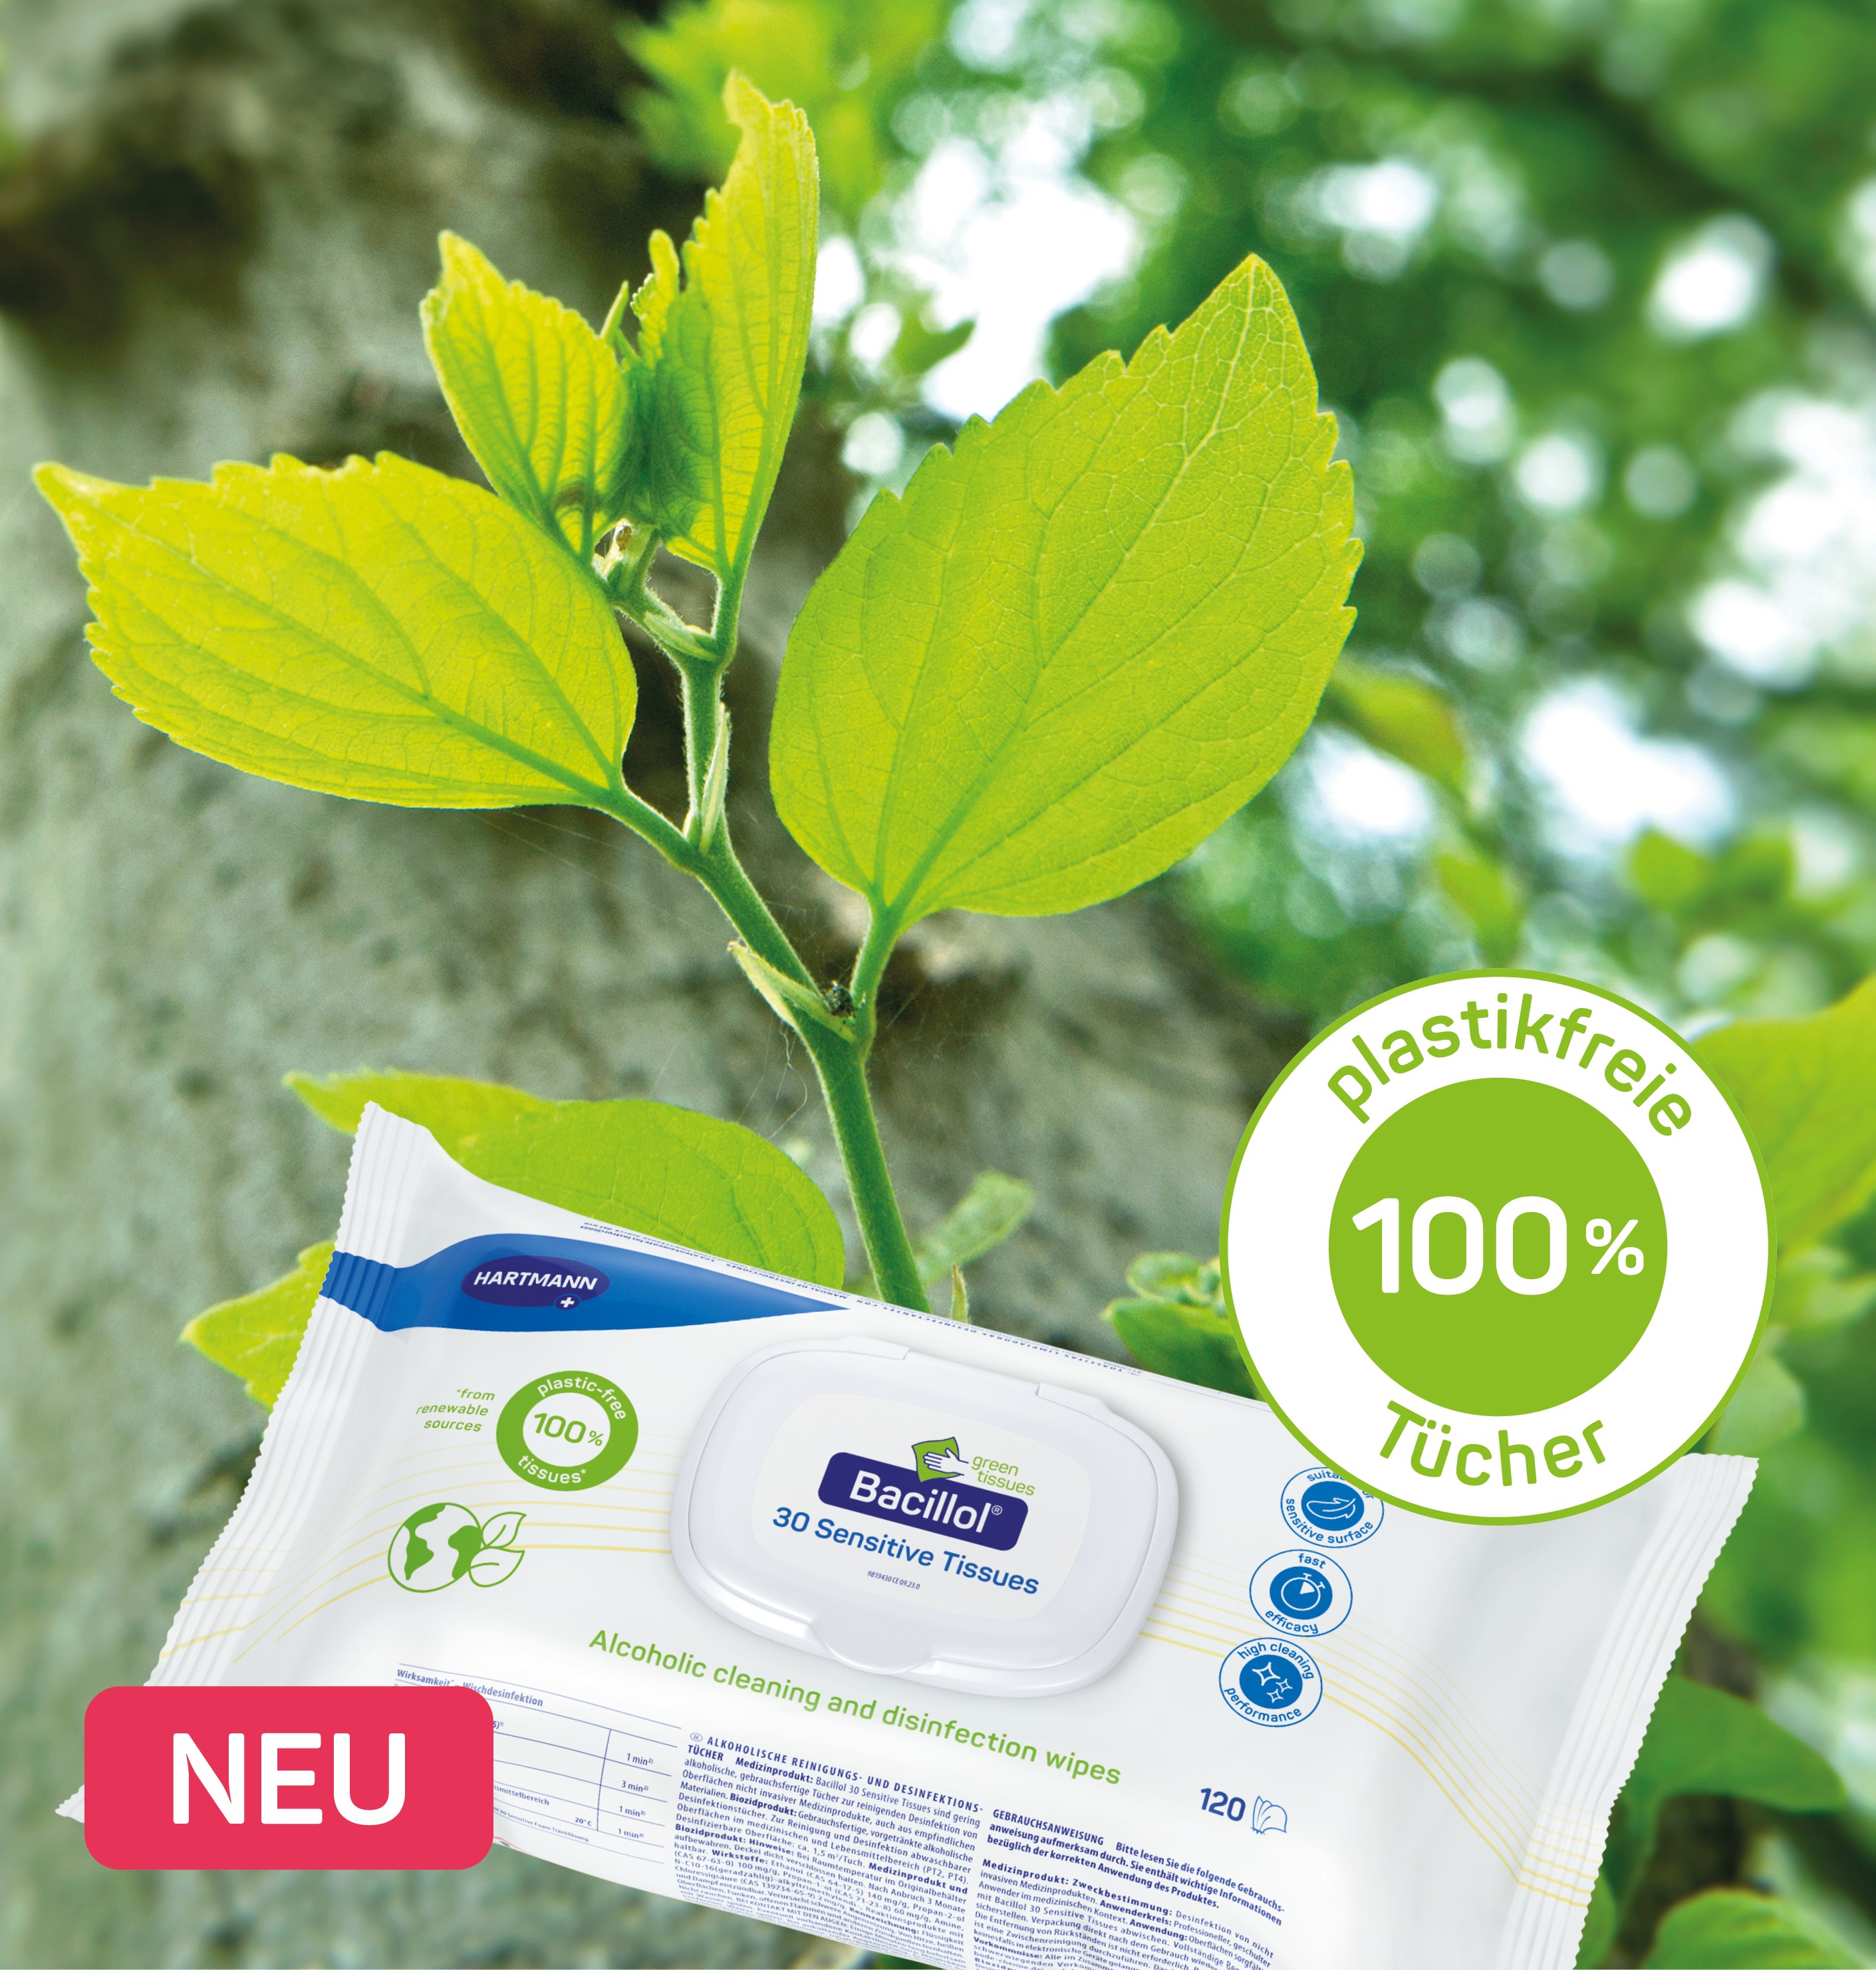 Foto einer grünen Pflanze. Davor eine Verpackung Bacillol® 30 Sensitive Green Tissues und der Text “100% plastikfreie Tücher”.